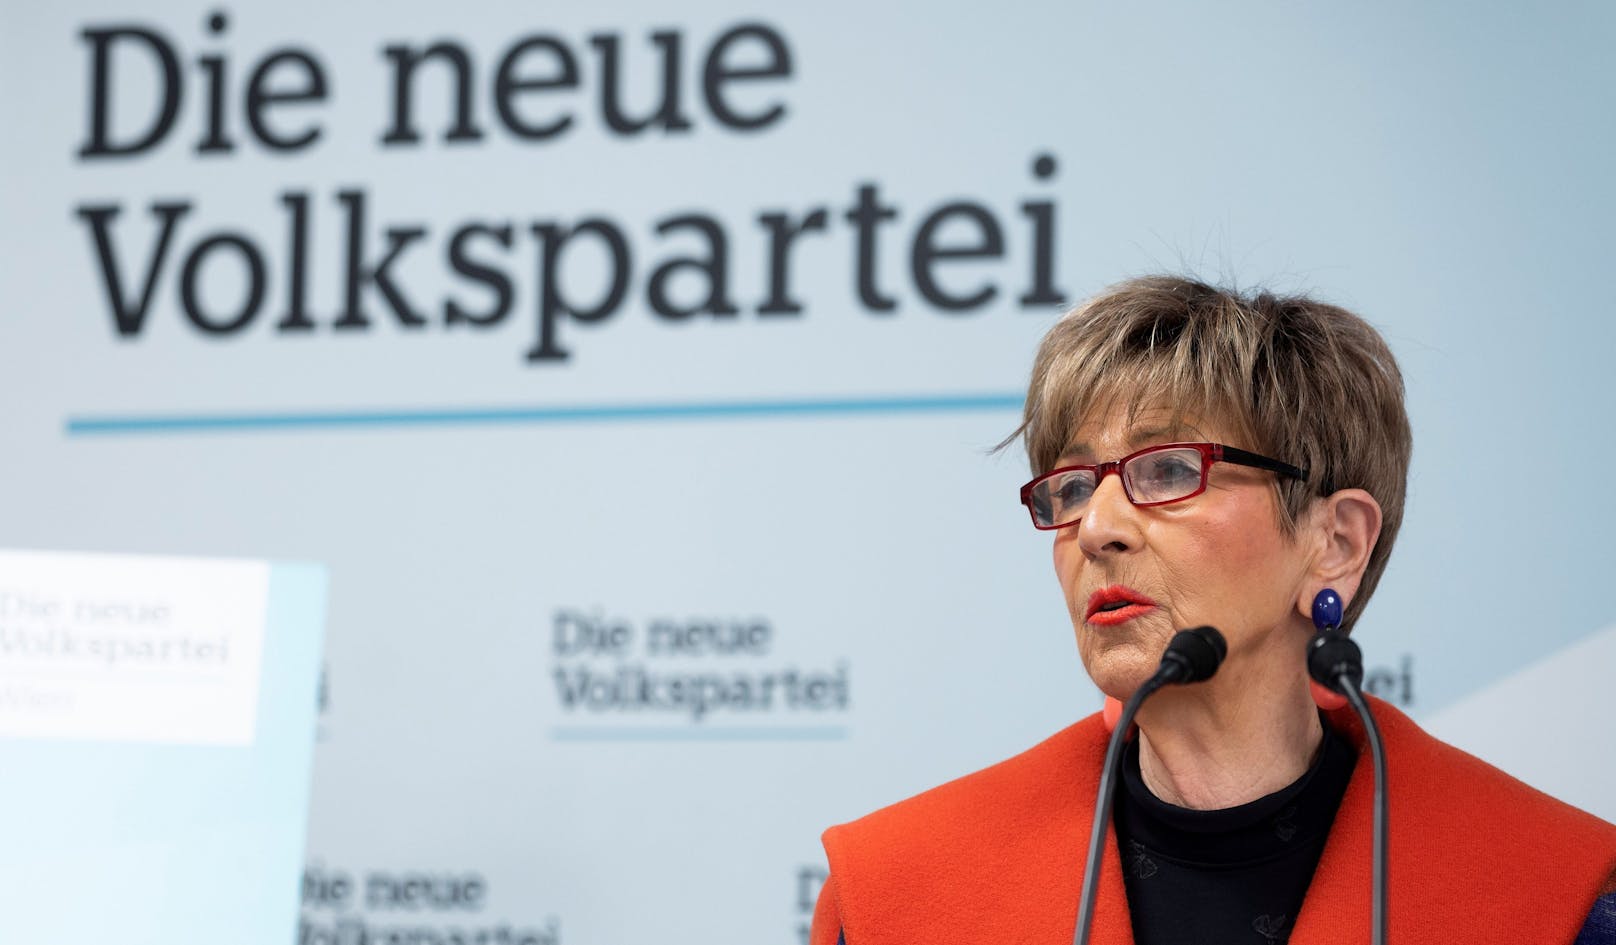 Ingrid Korosec (ÖVP) vermutet "Misswirtschaft, Verschwendung von Steuergeldern und Planlosigkeit".